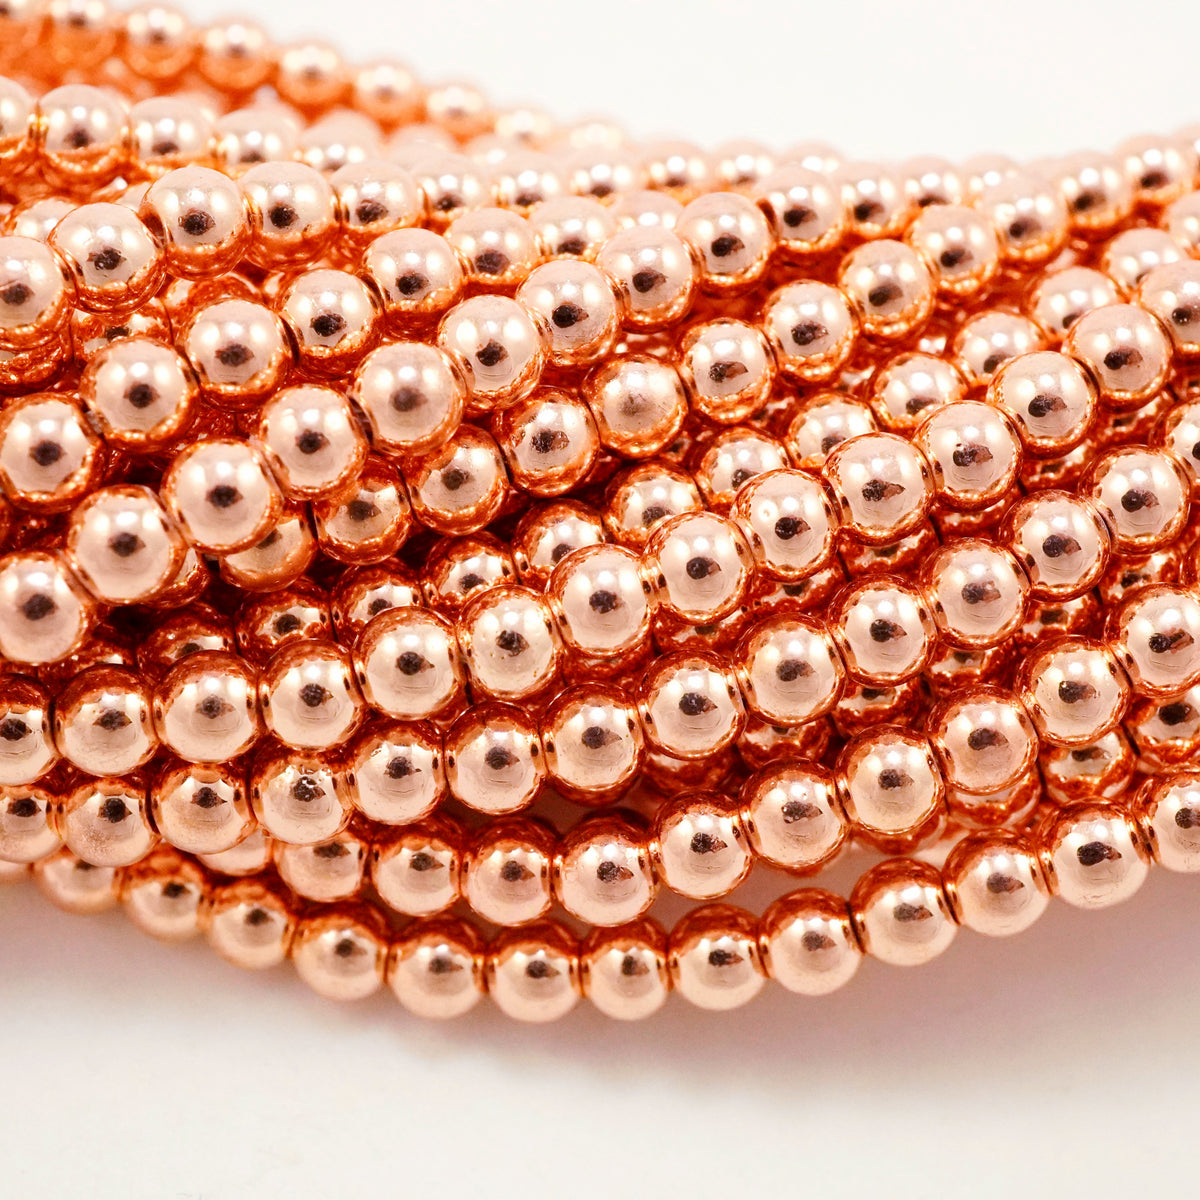 Hematite Copper Bead Necklace 4mm Round Hematite Beads Handmade Copper Bead  Necklace